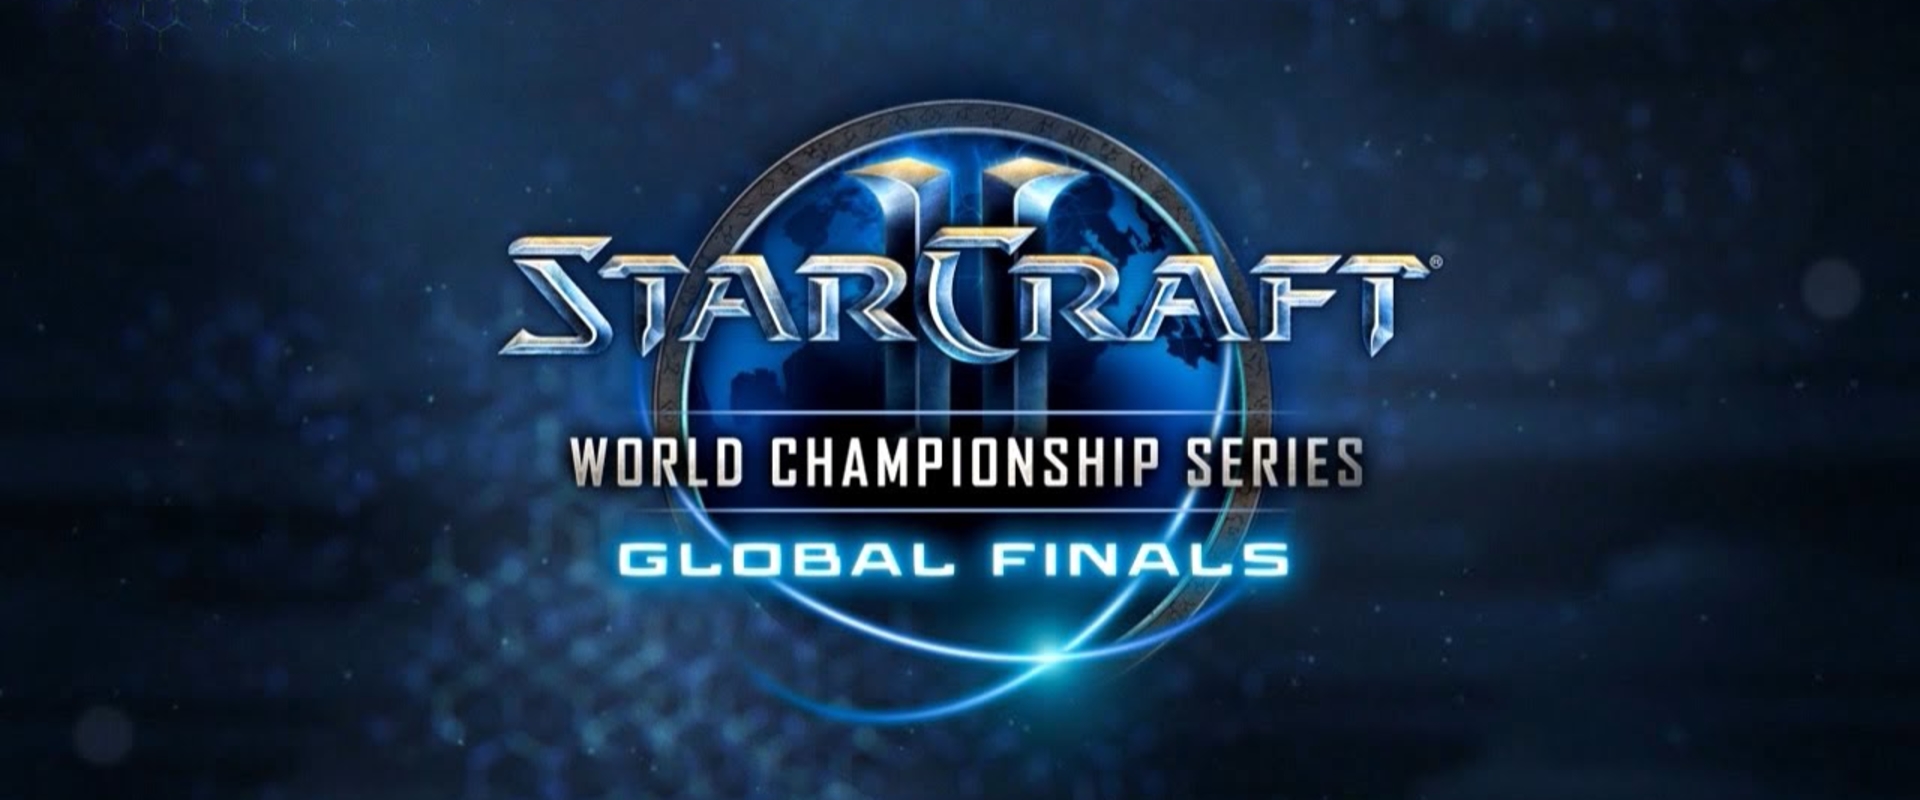 Megvan a Top 8 a StarCraft 2 világbajnokságon